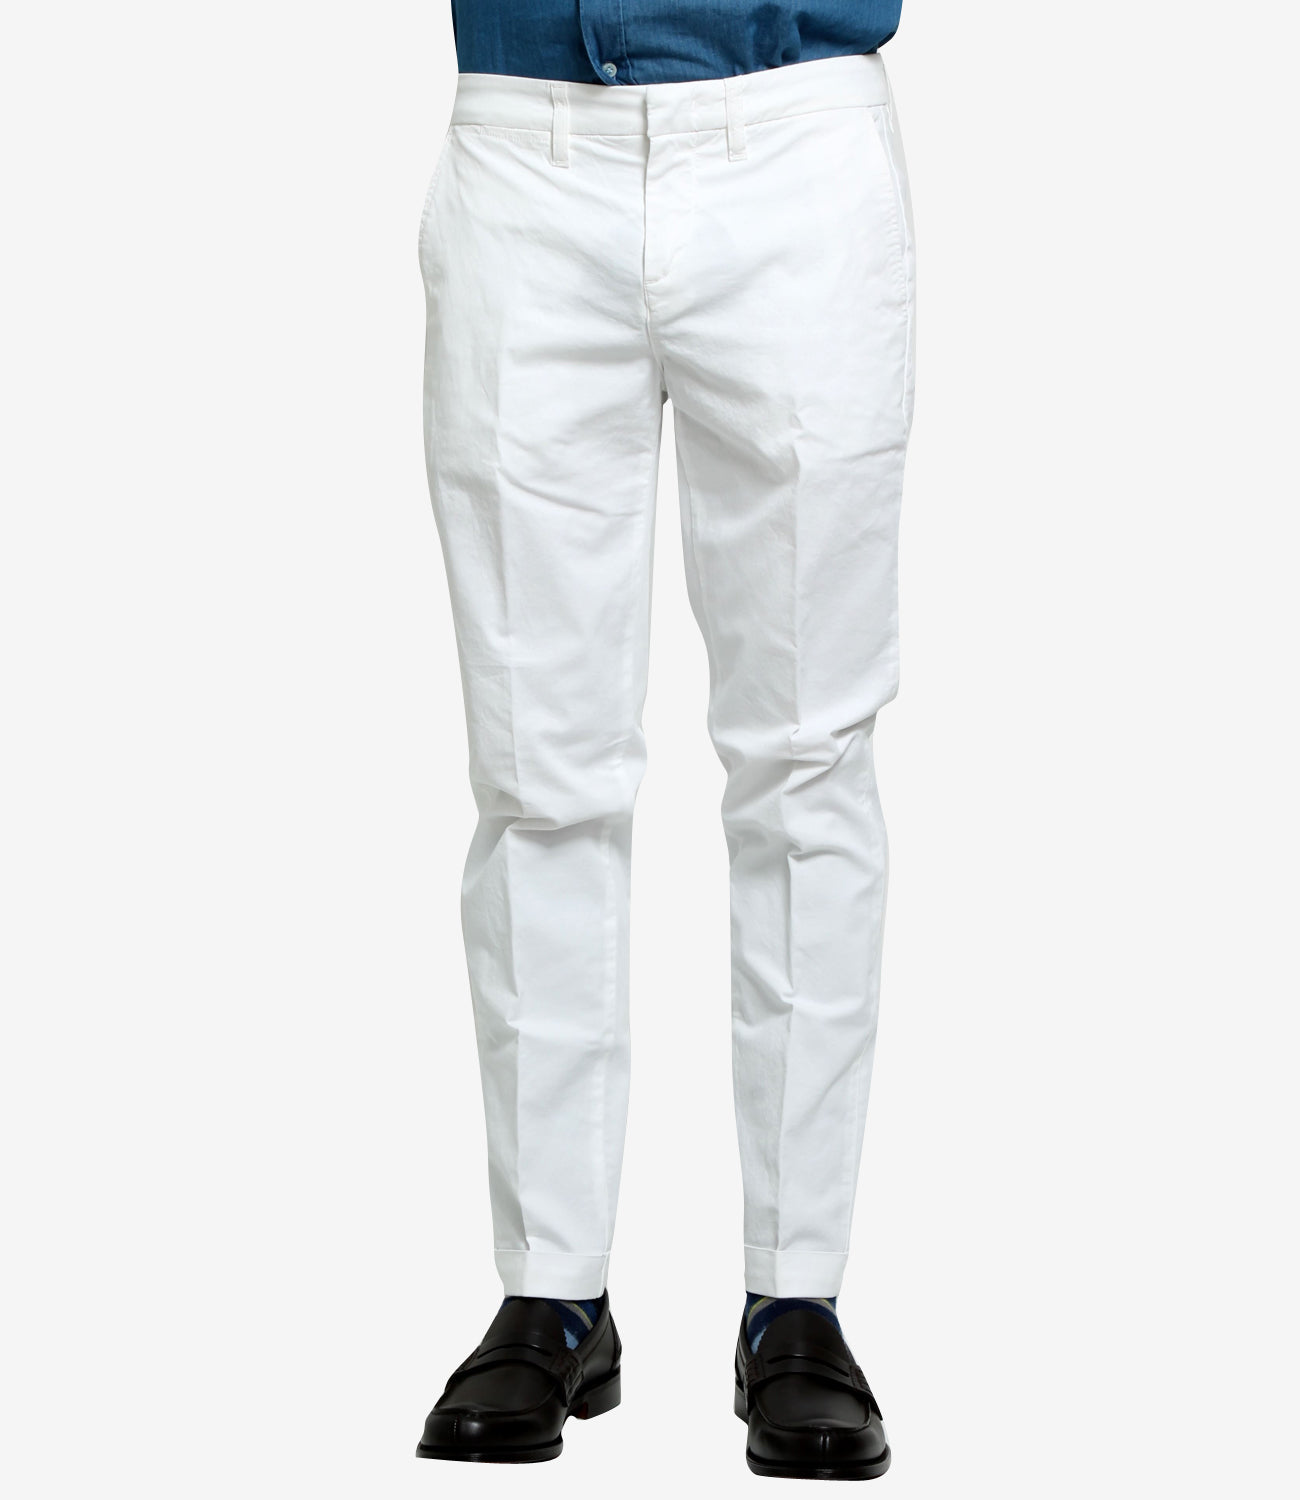 Fay | Pantalone Bianco